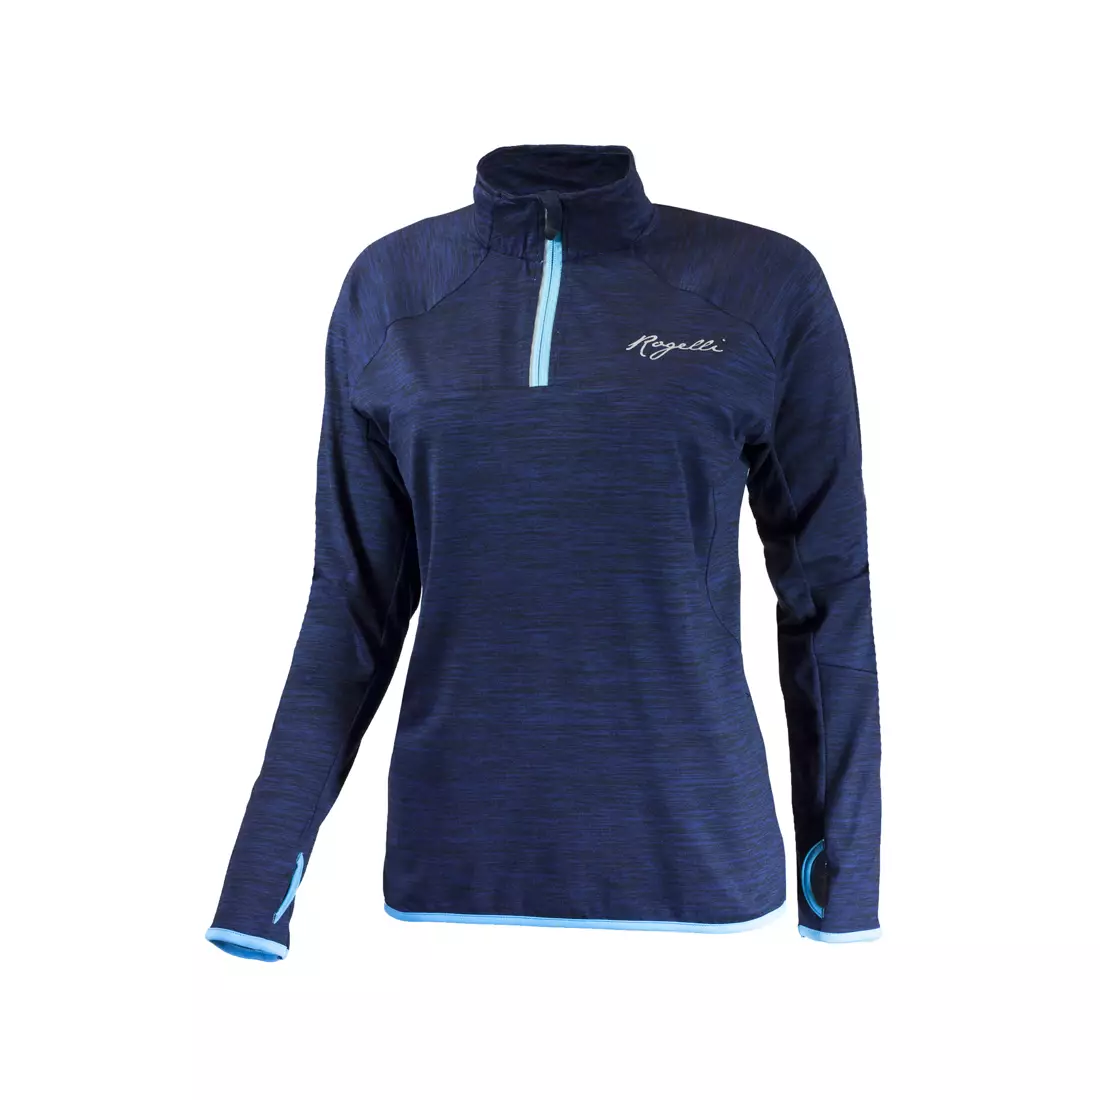 ROGELLI RUN BRIGHT 840.664 - dámske bežecké tričko s dlhým rukávom, modrá melanž